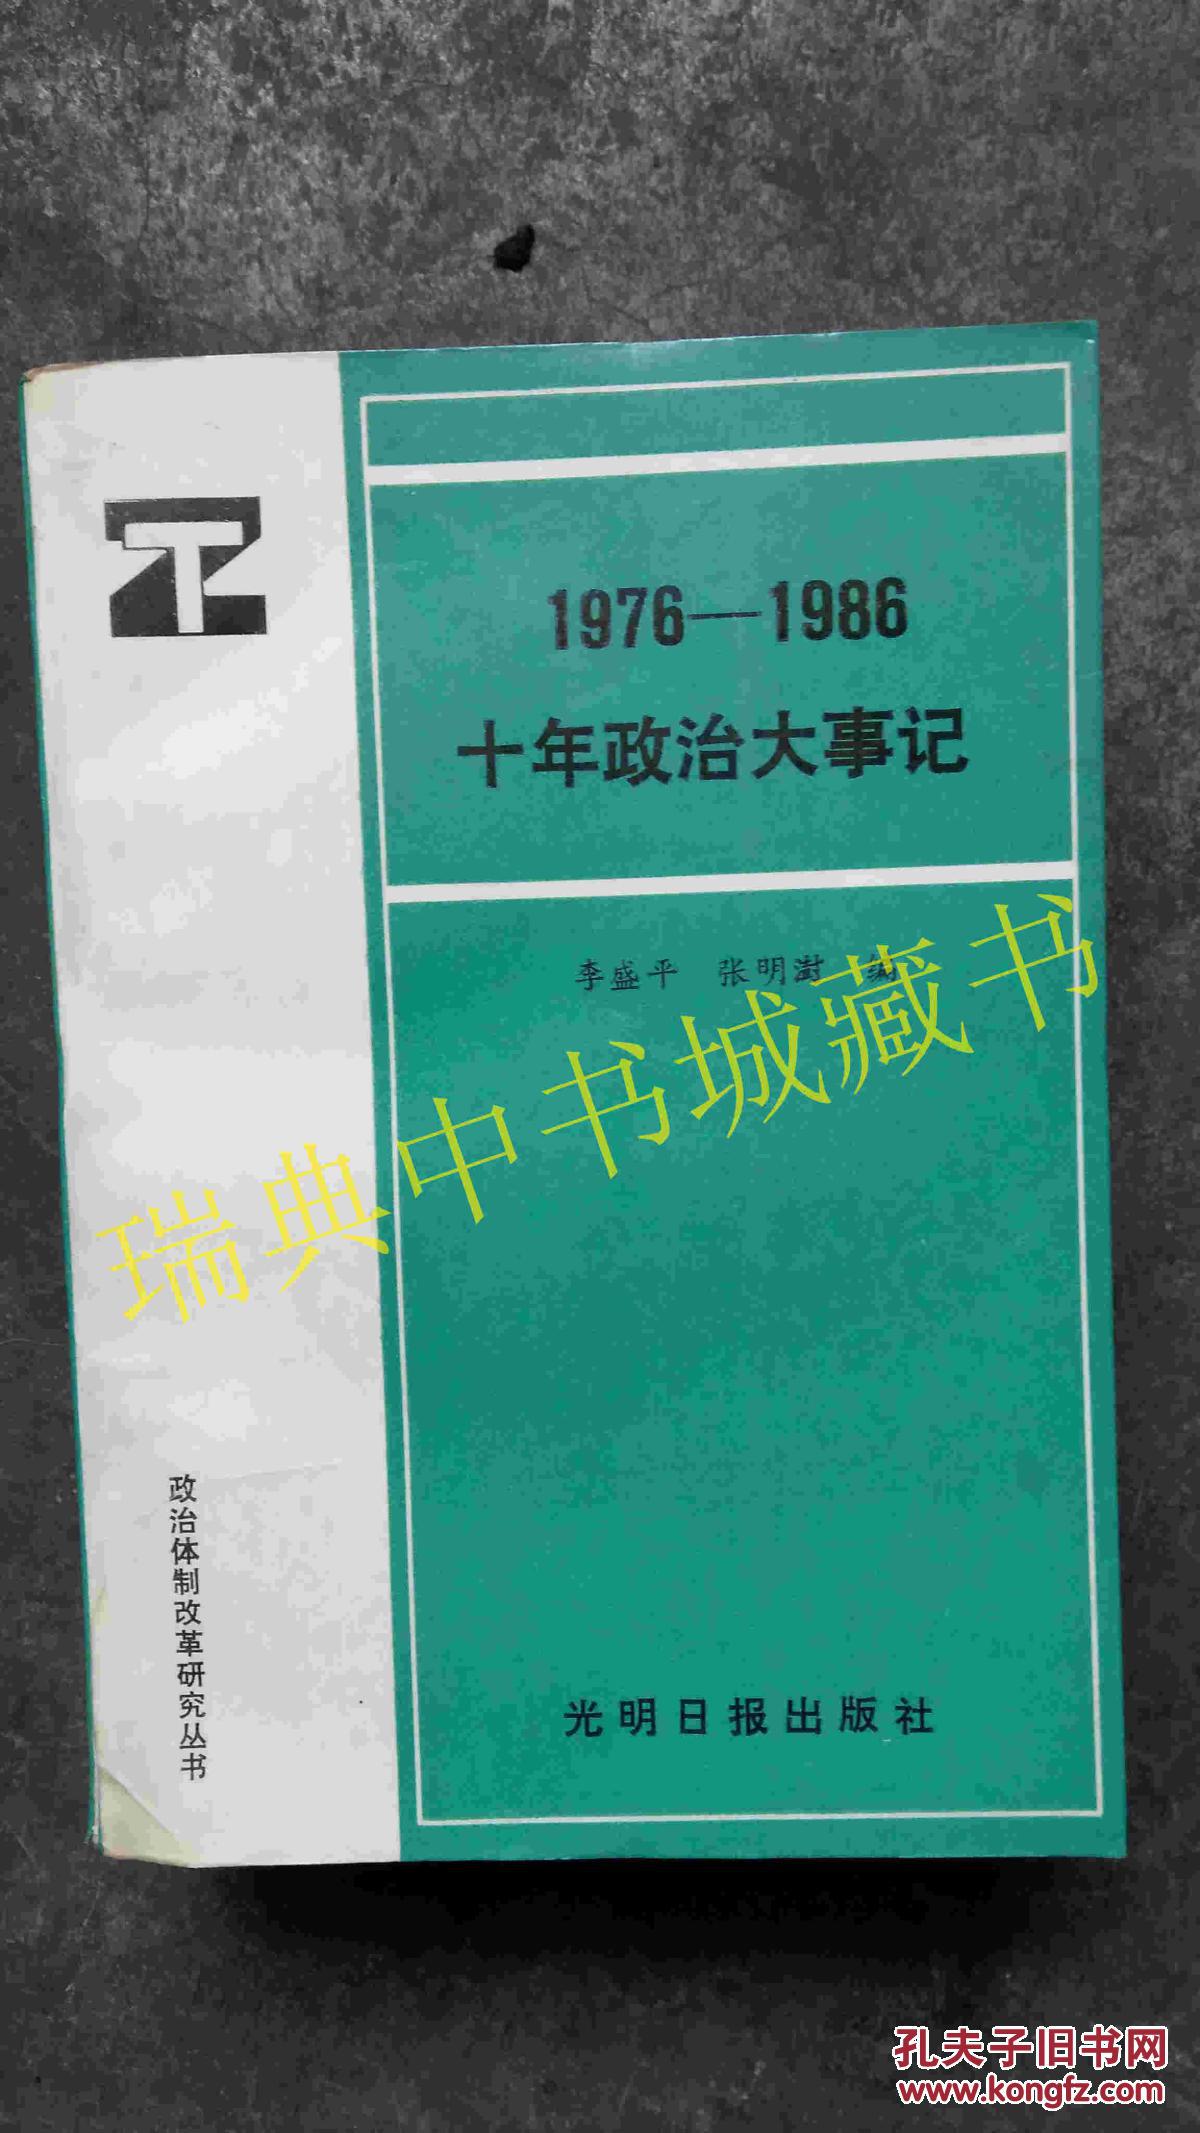 【图】1976~1986十年政治大事记_价格:30.00